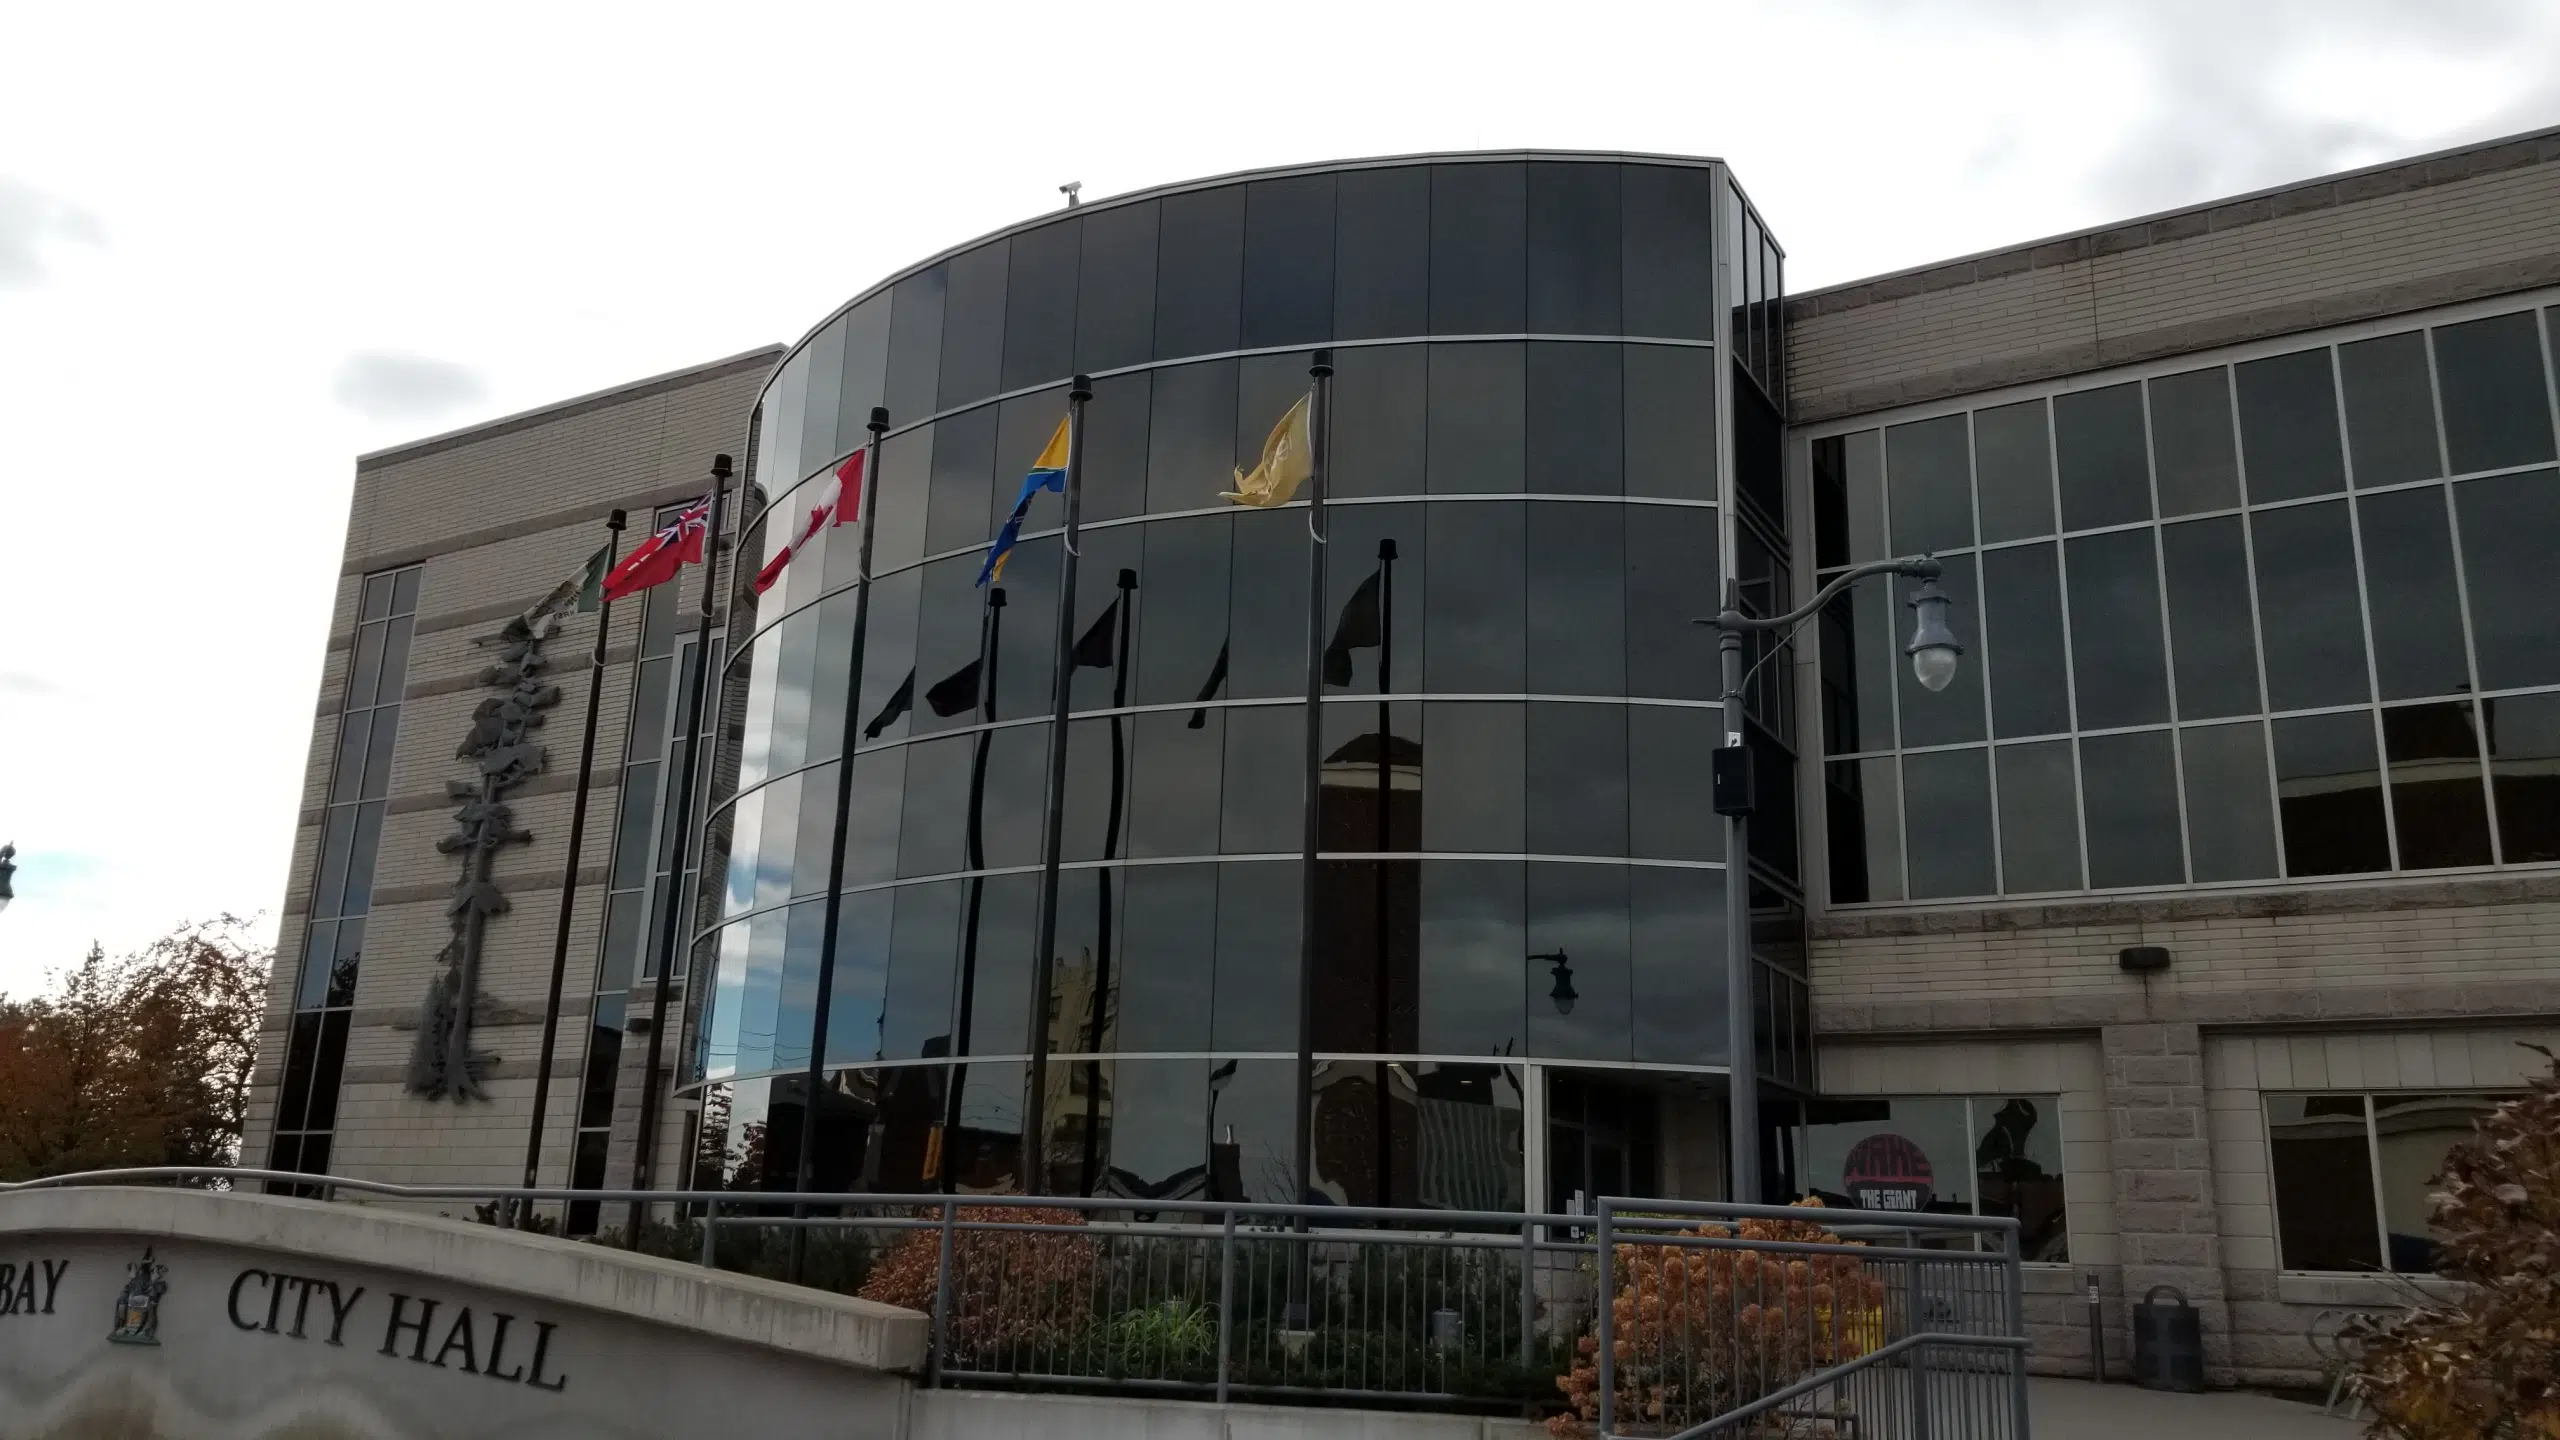 City Hall - City of Thunder Bay